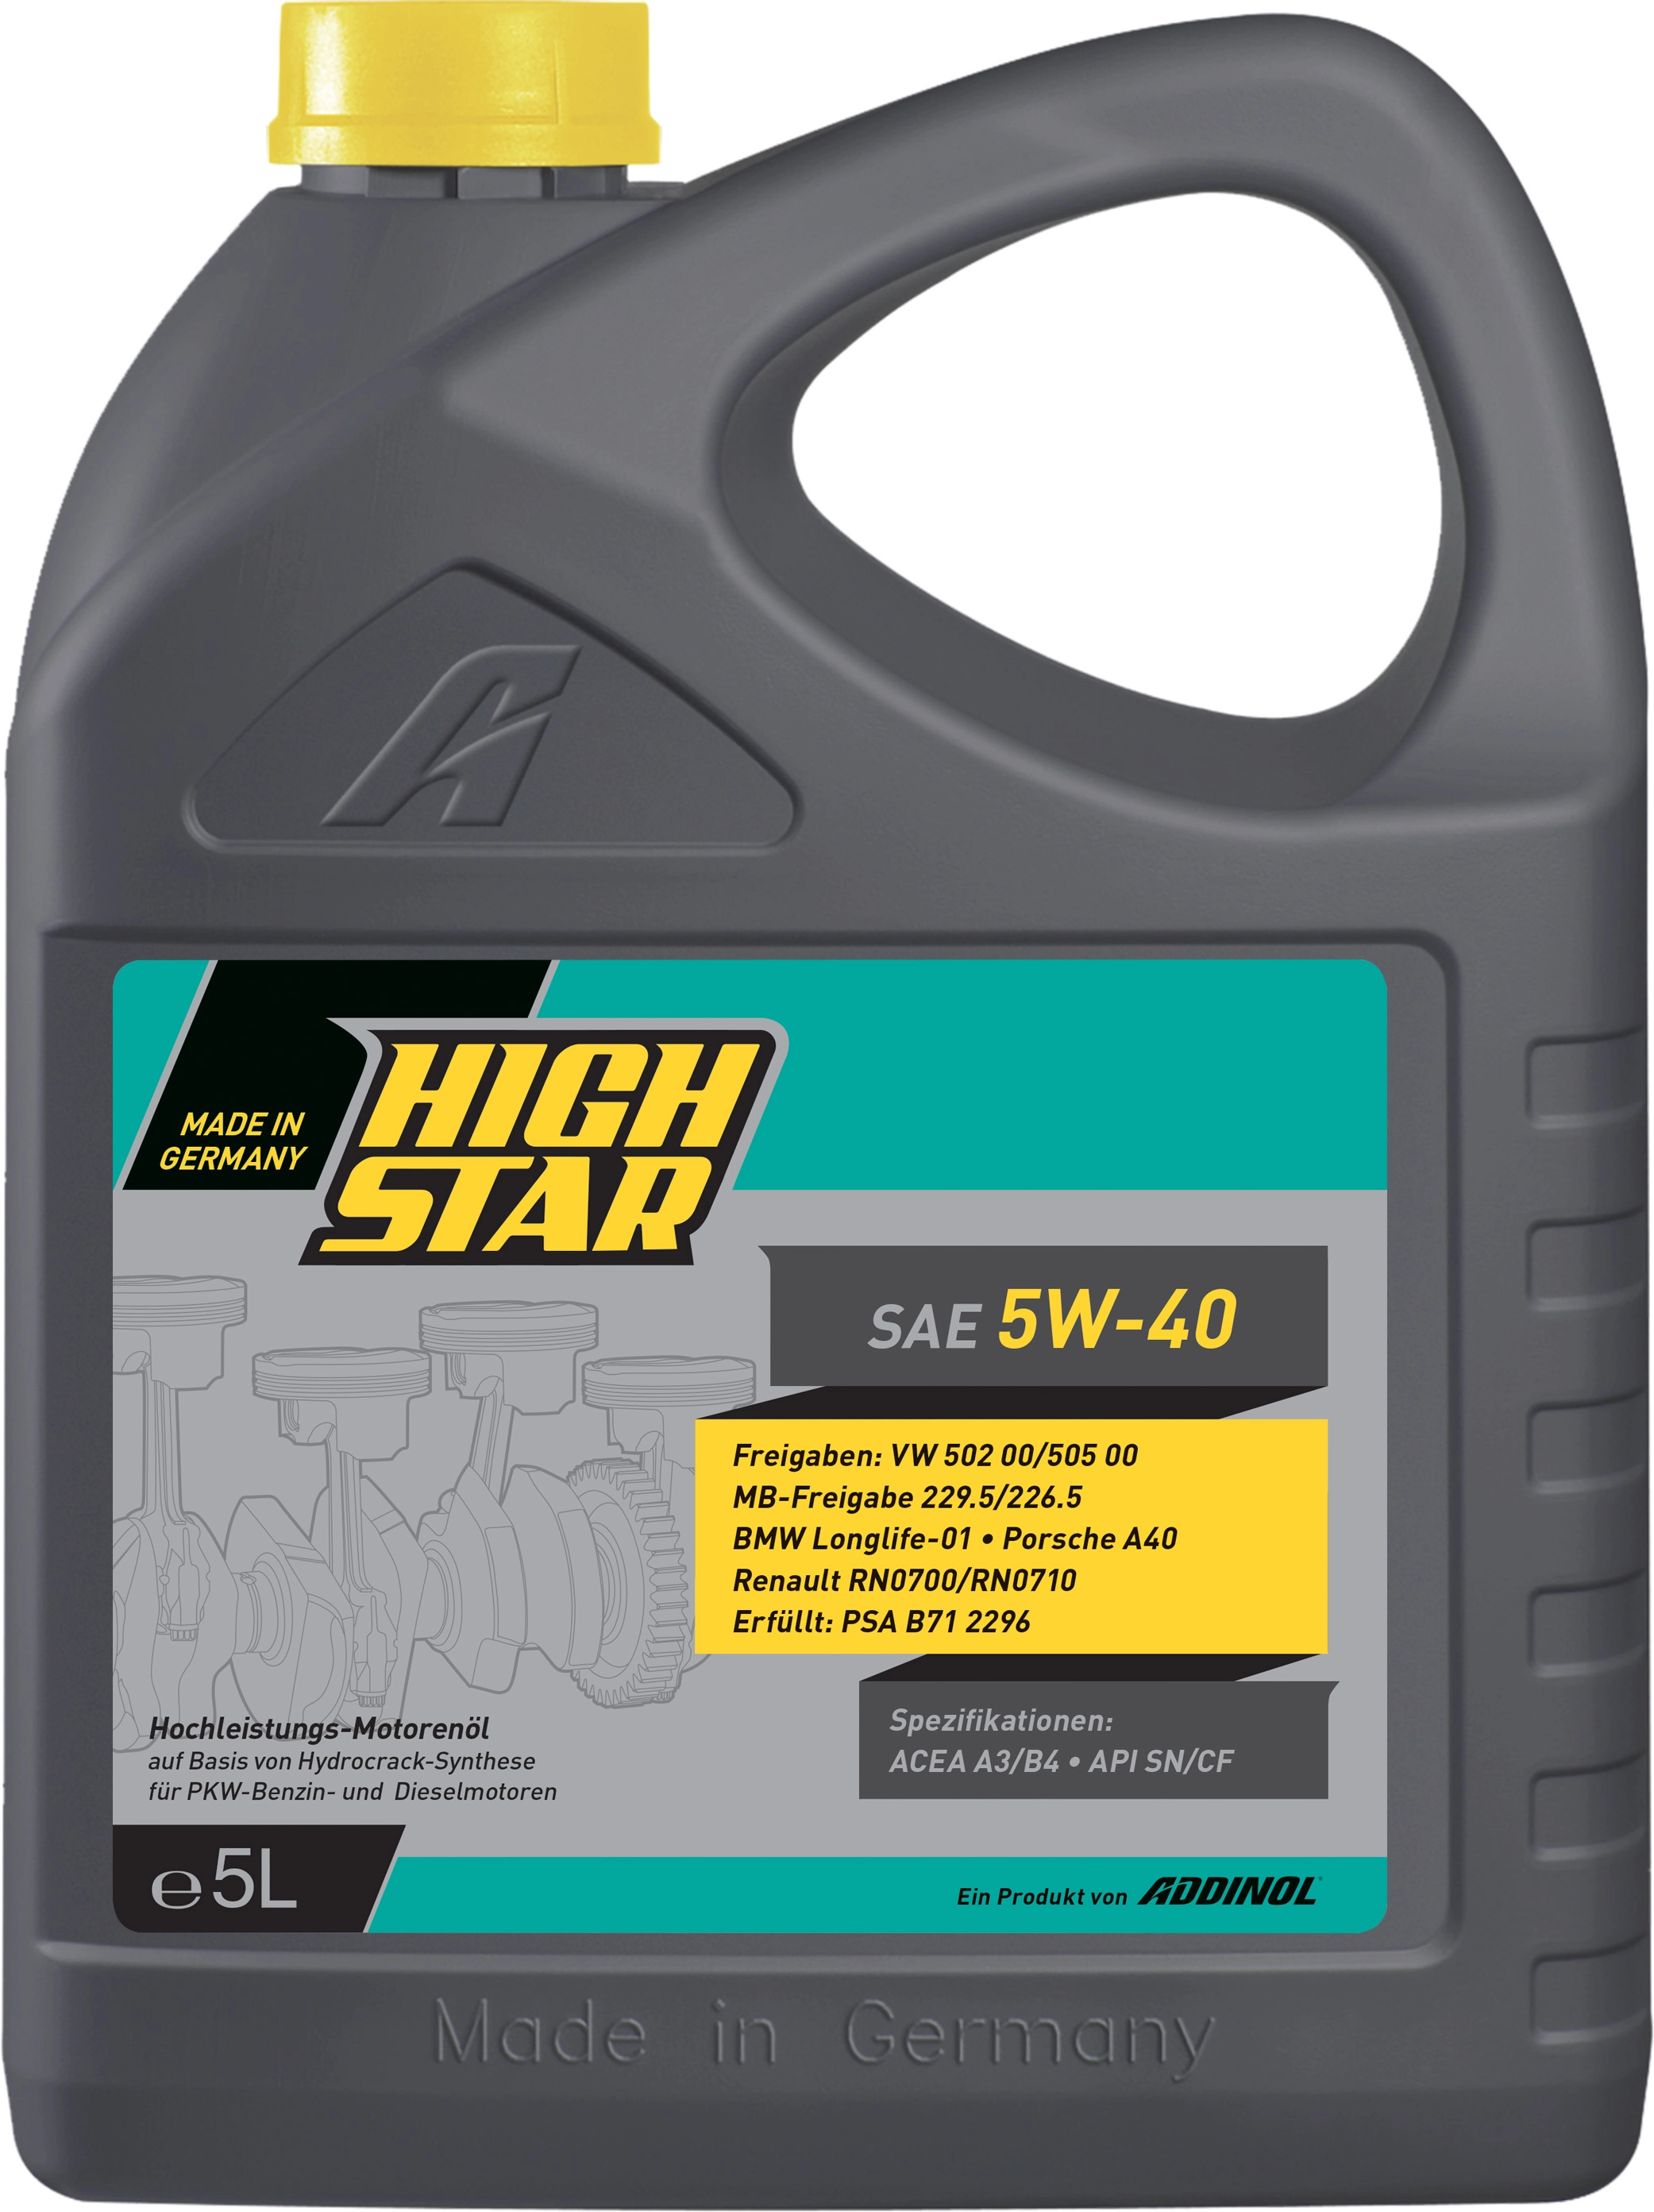 High Star SAE 5W-40 5 l Motoröl kaufen bei OBI